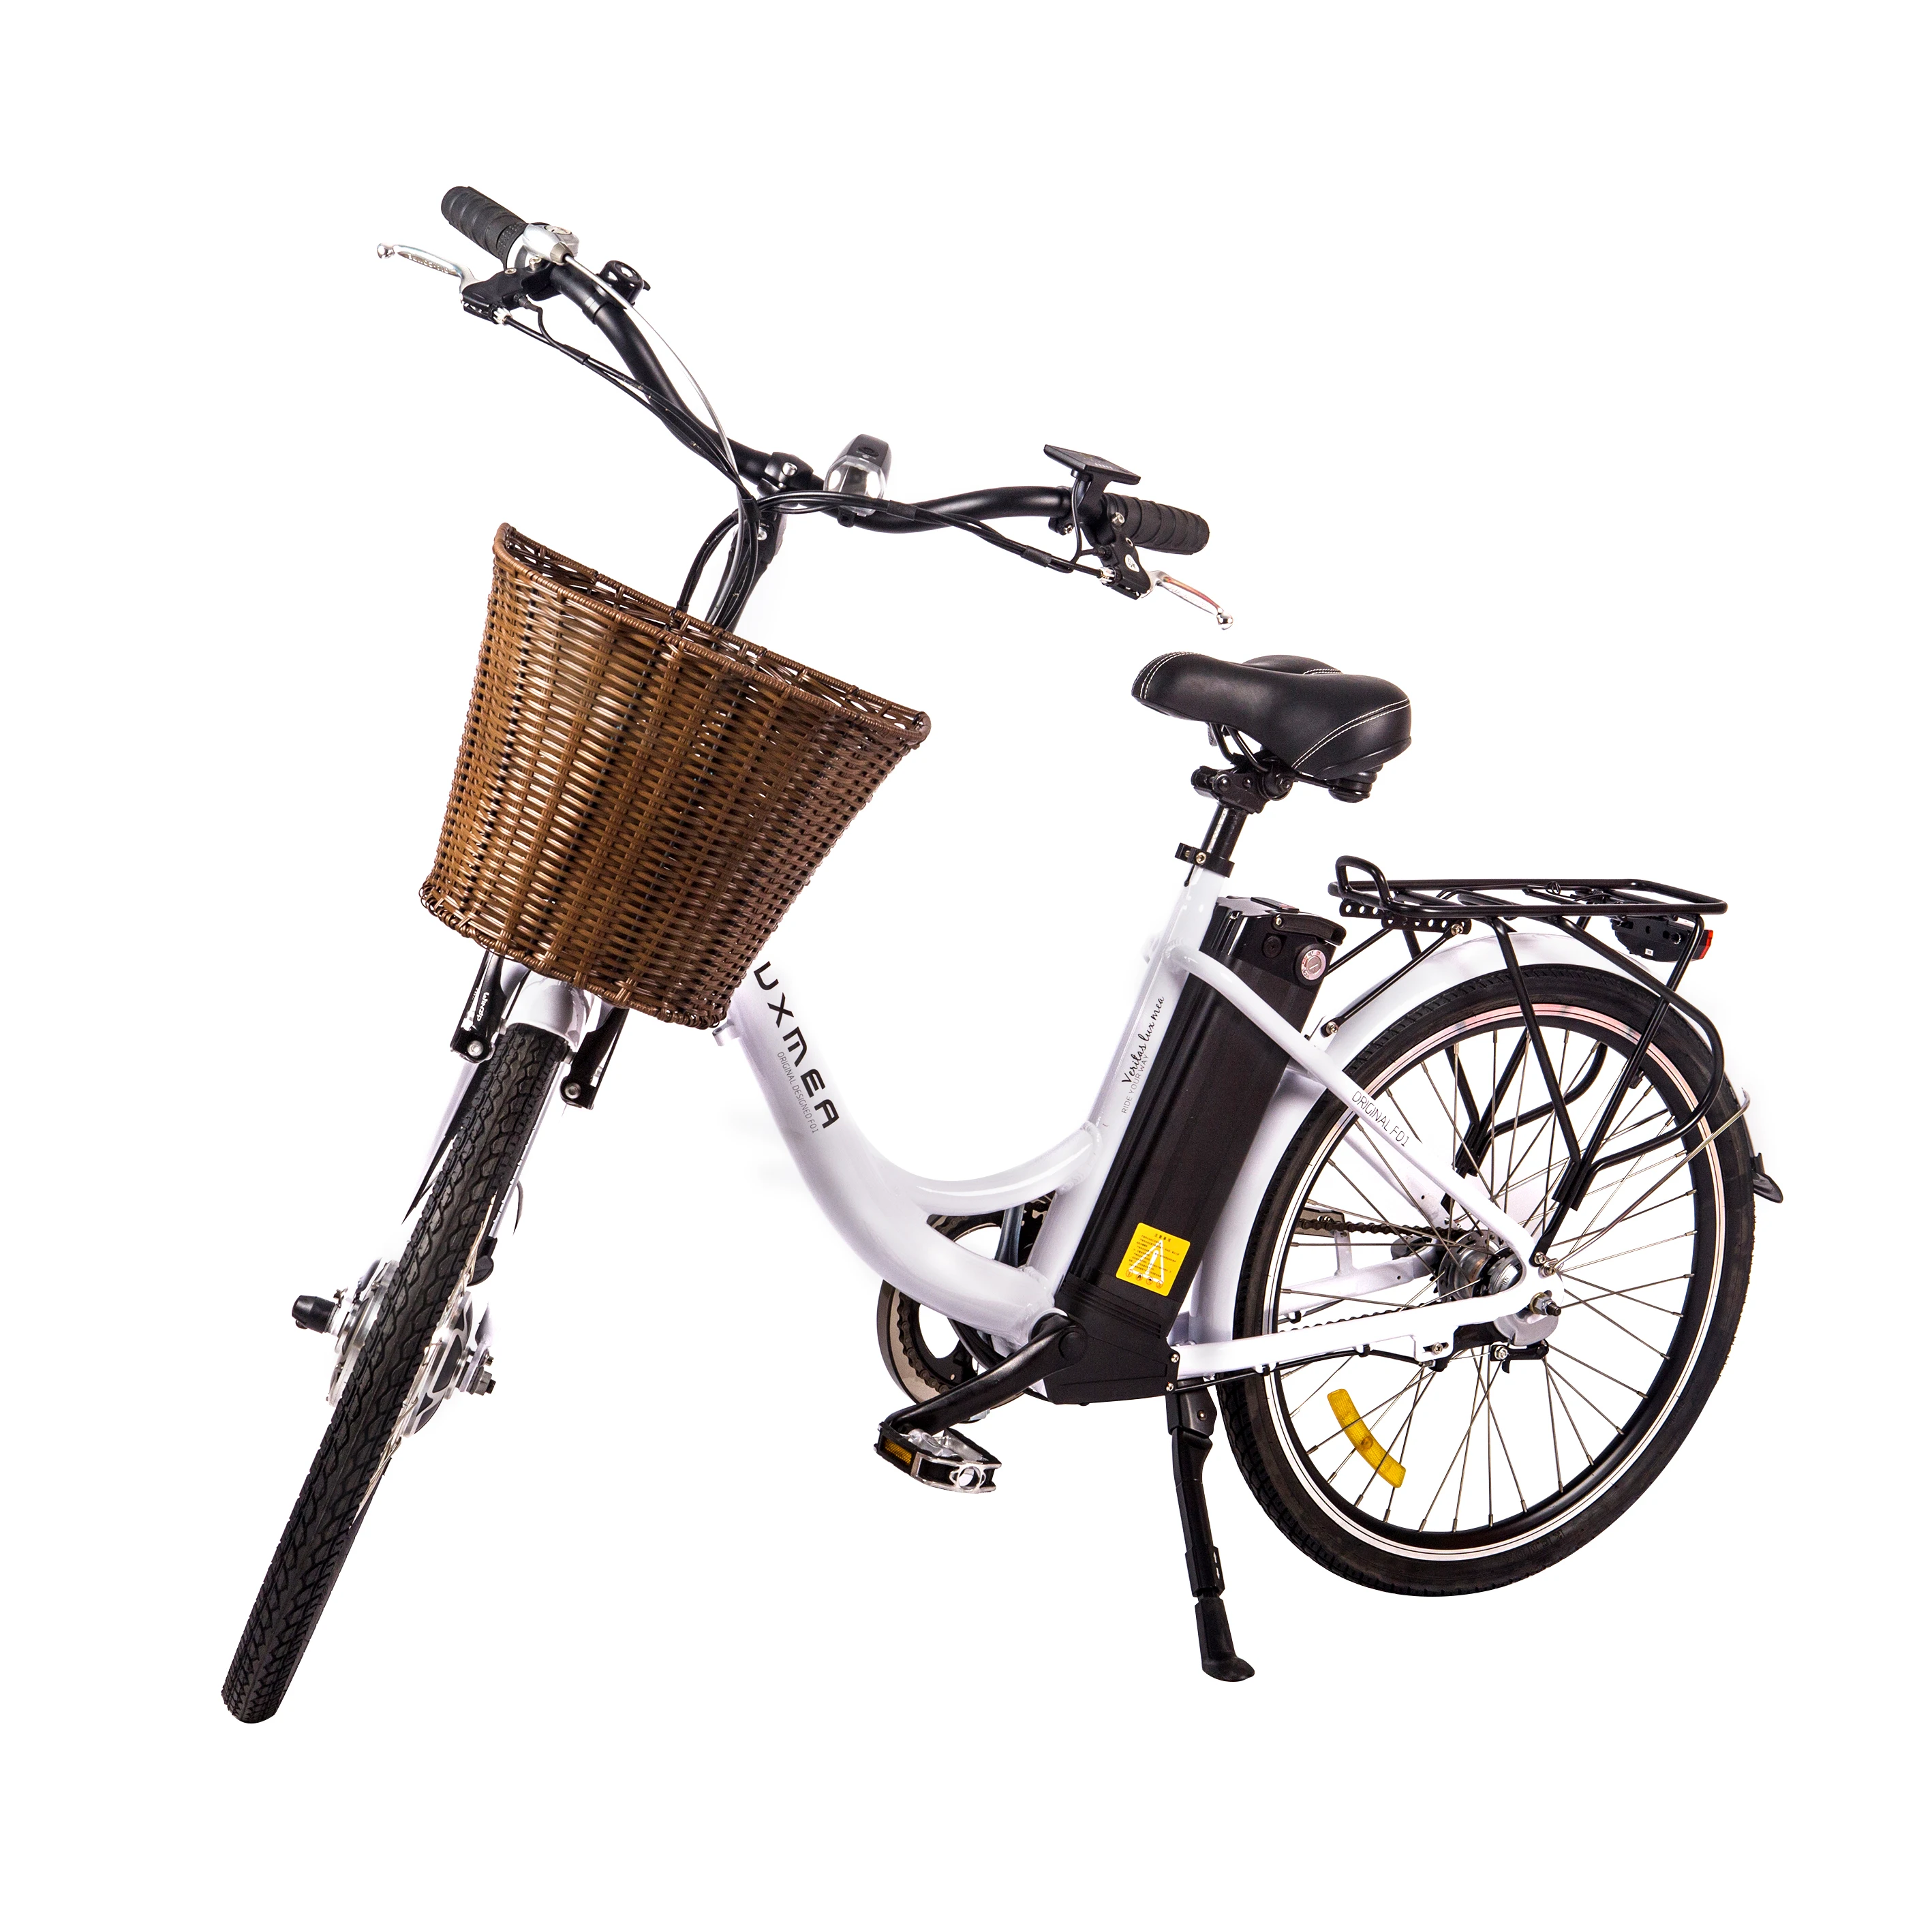 富士达电动助力自行车图片